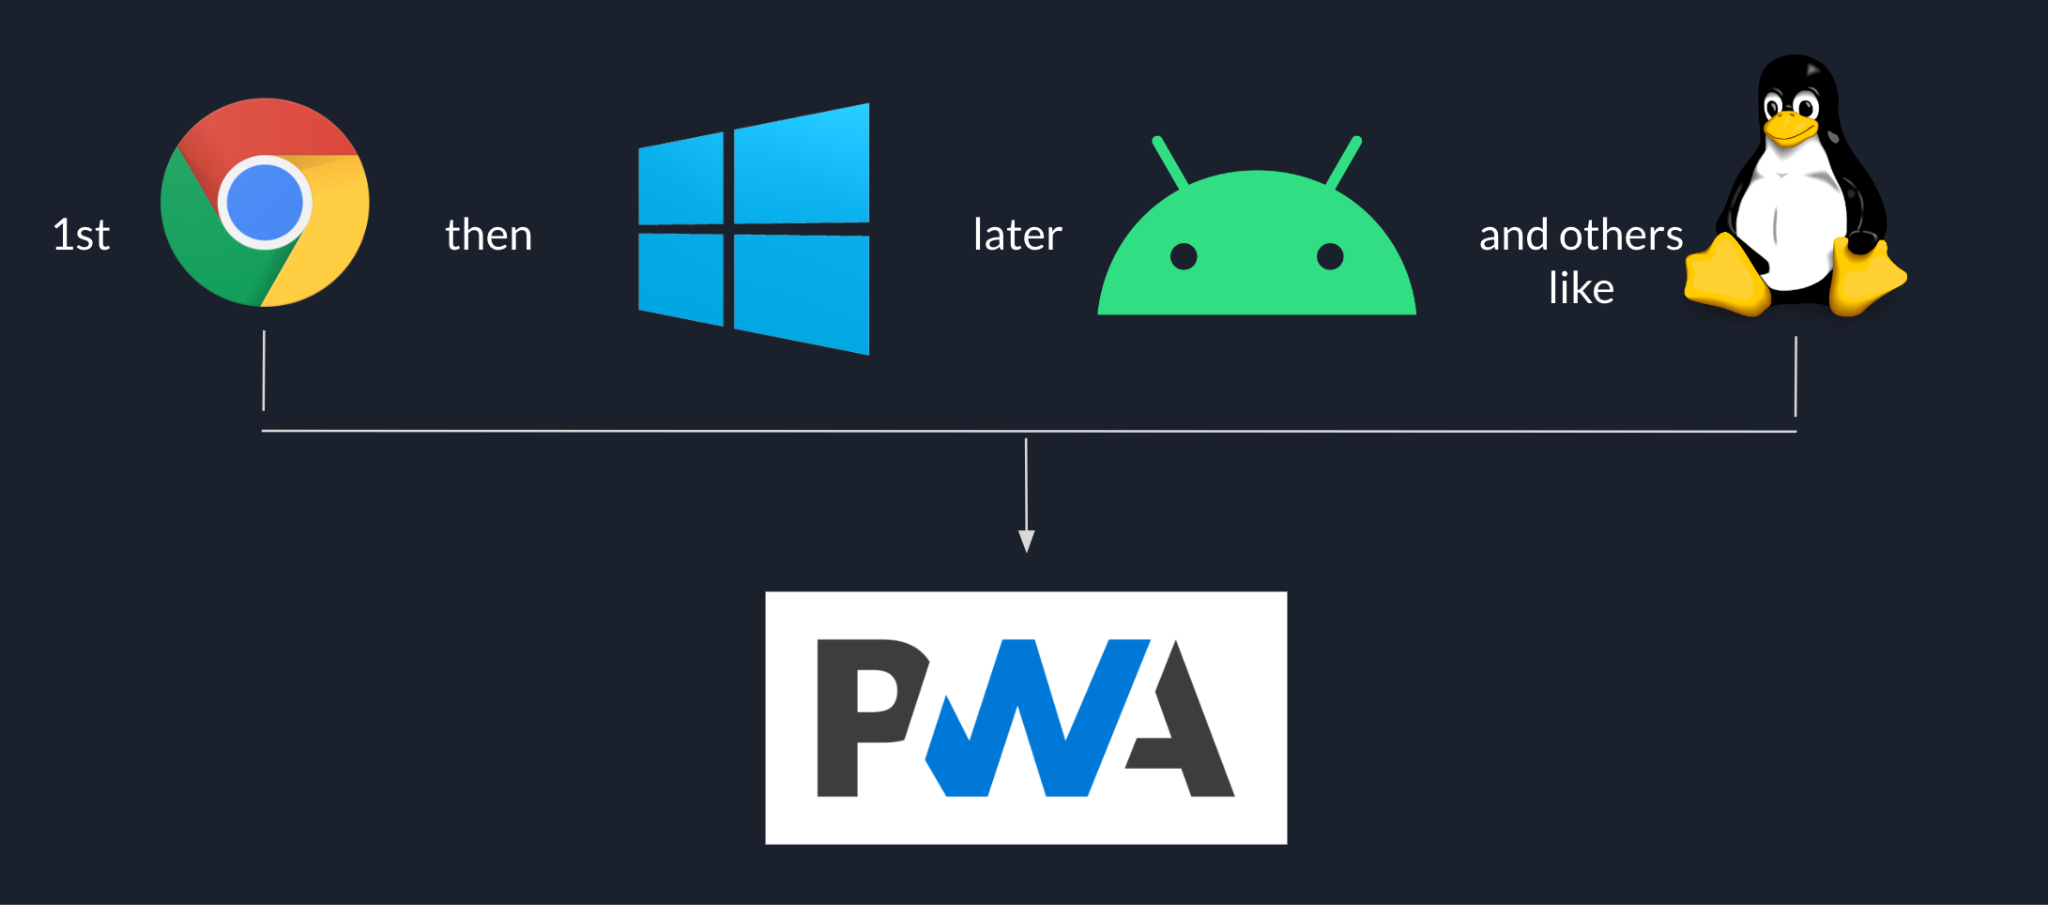 Goodnotes के रोल आउट का क्रम, Chrome से शुरू होता है और उसके बाद Windows, उसके बाद Android, और Linux जैसे अन्य प्लैटफ़ॉर्म पर शुरू होता है. ये सभी PWA पर आधारित हैं.